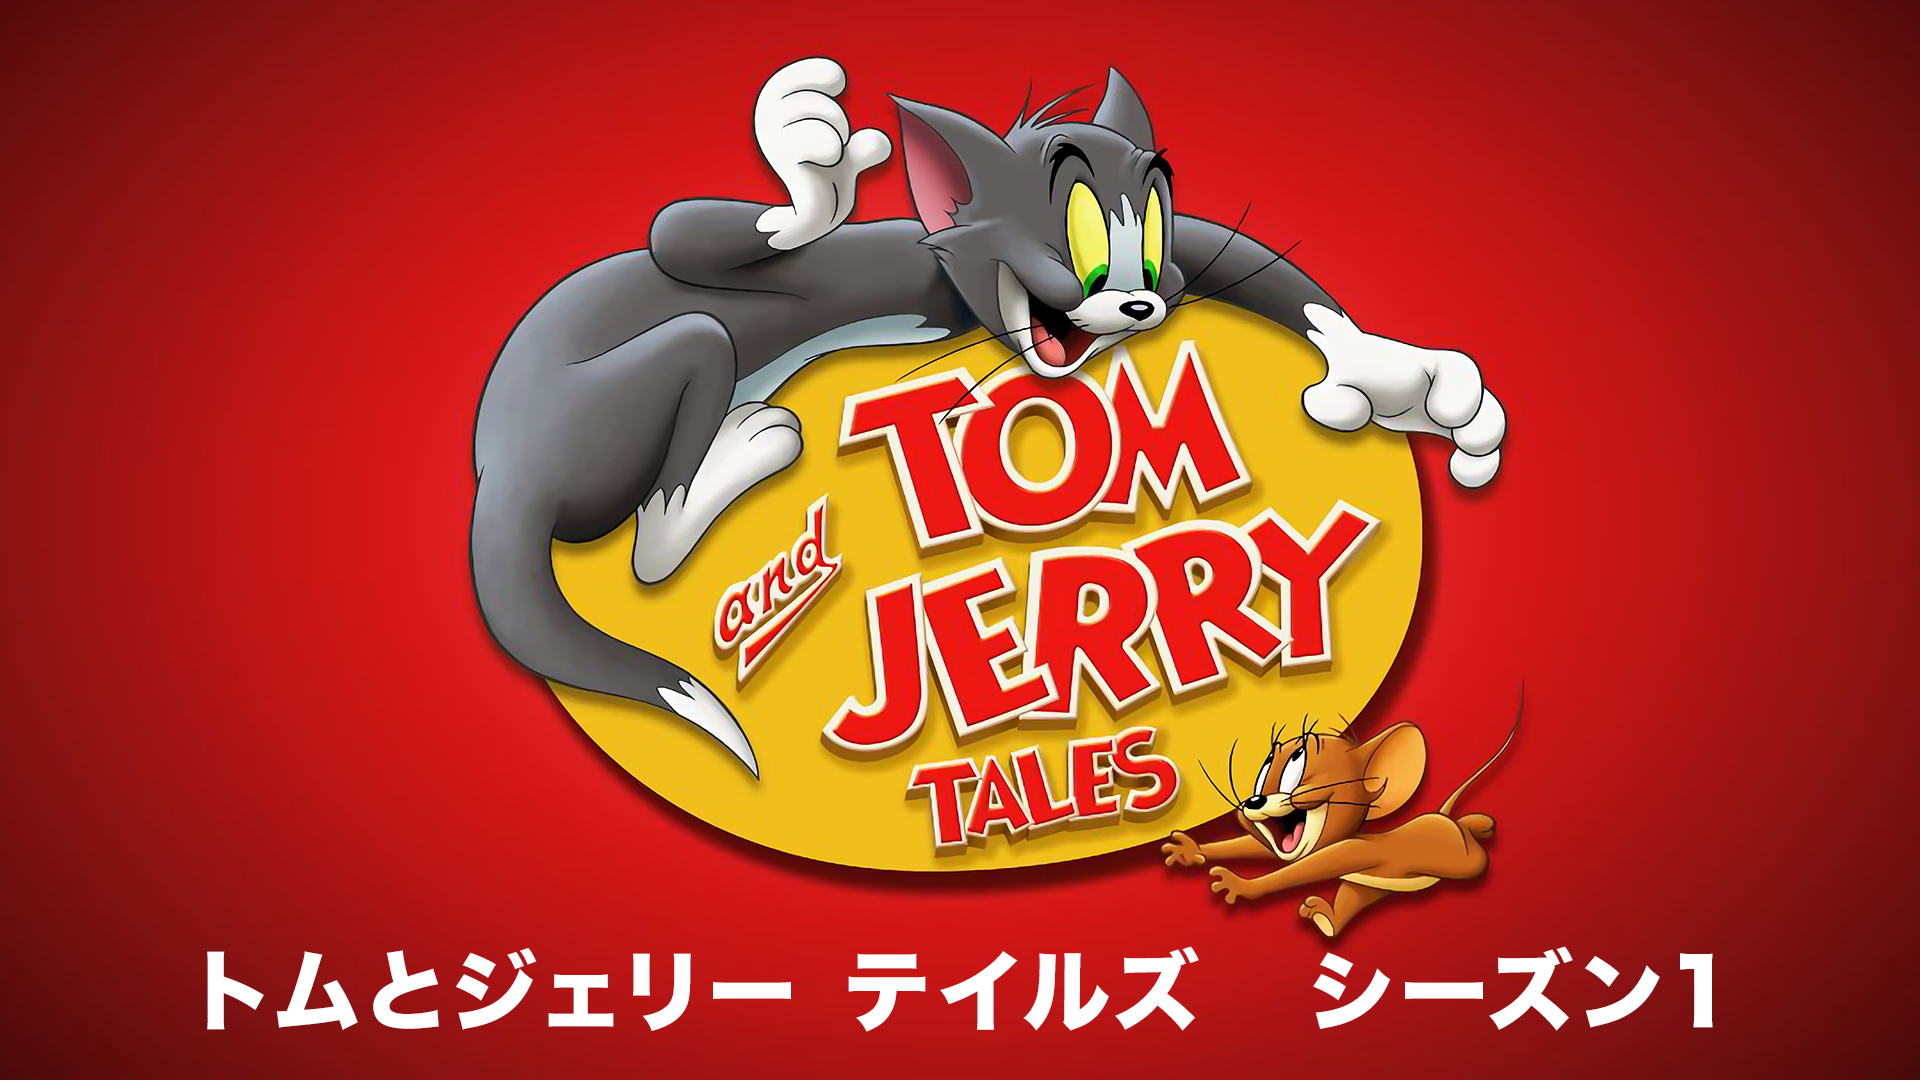 トムとジェリー テイルズ シーズン1(アニメ / 2006) - 動画配信 | U 